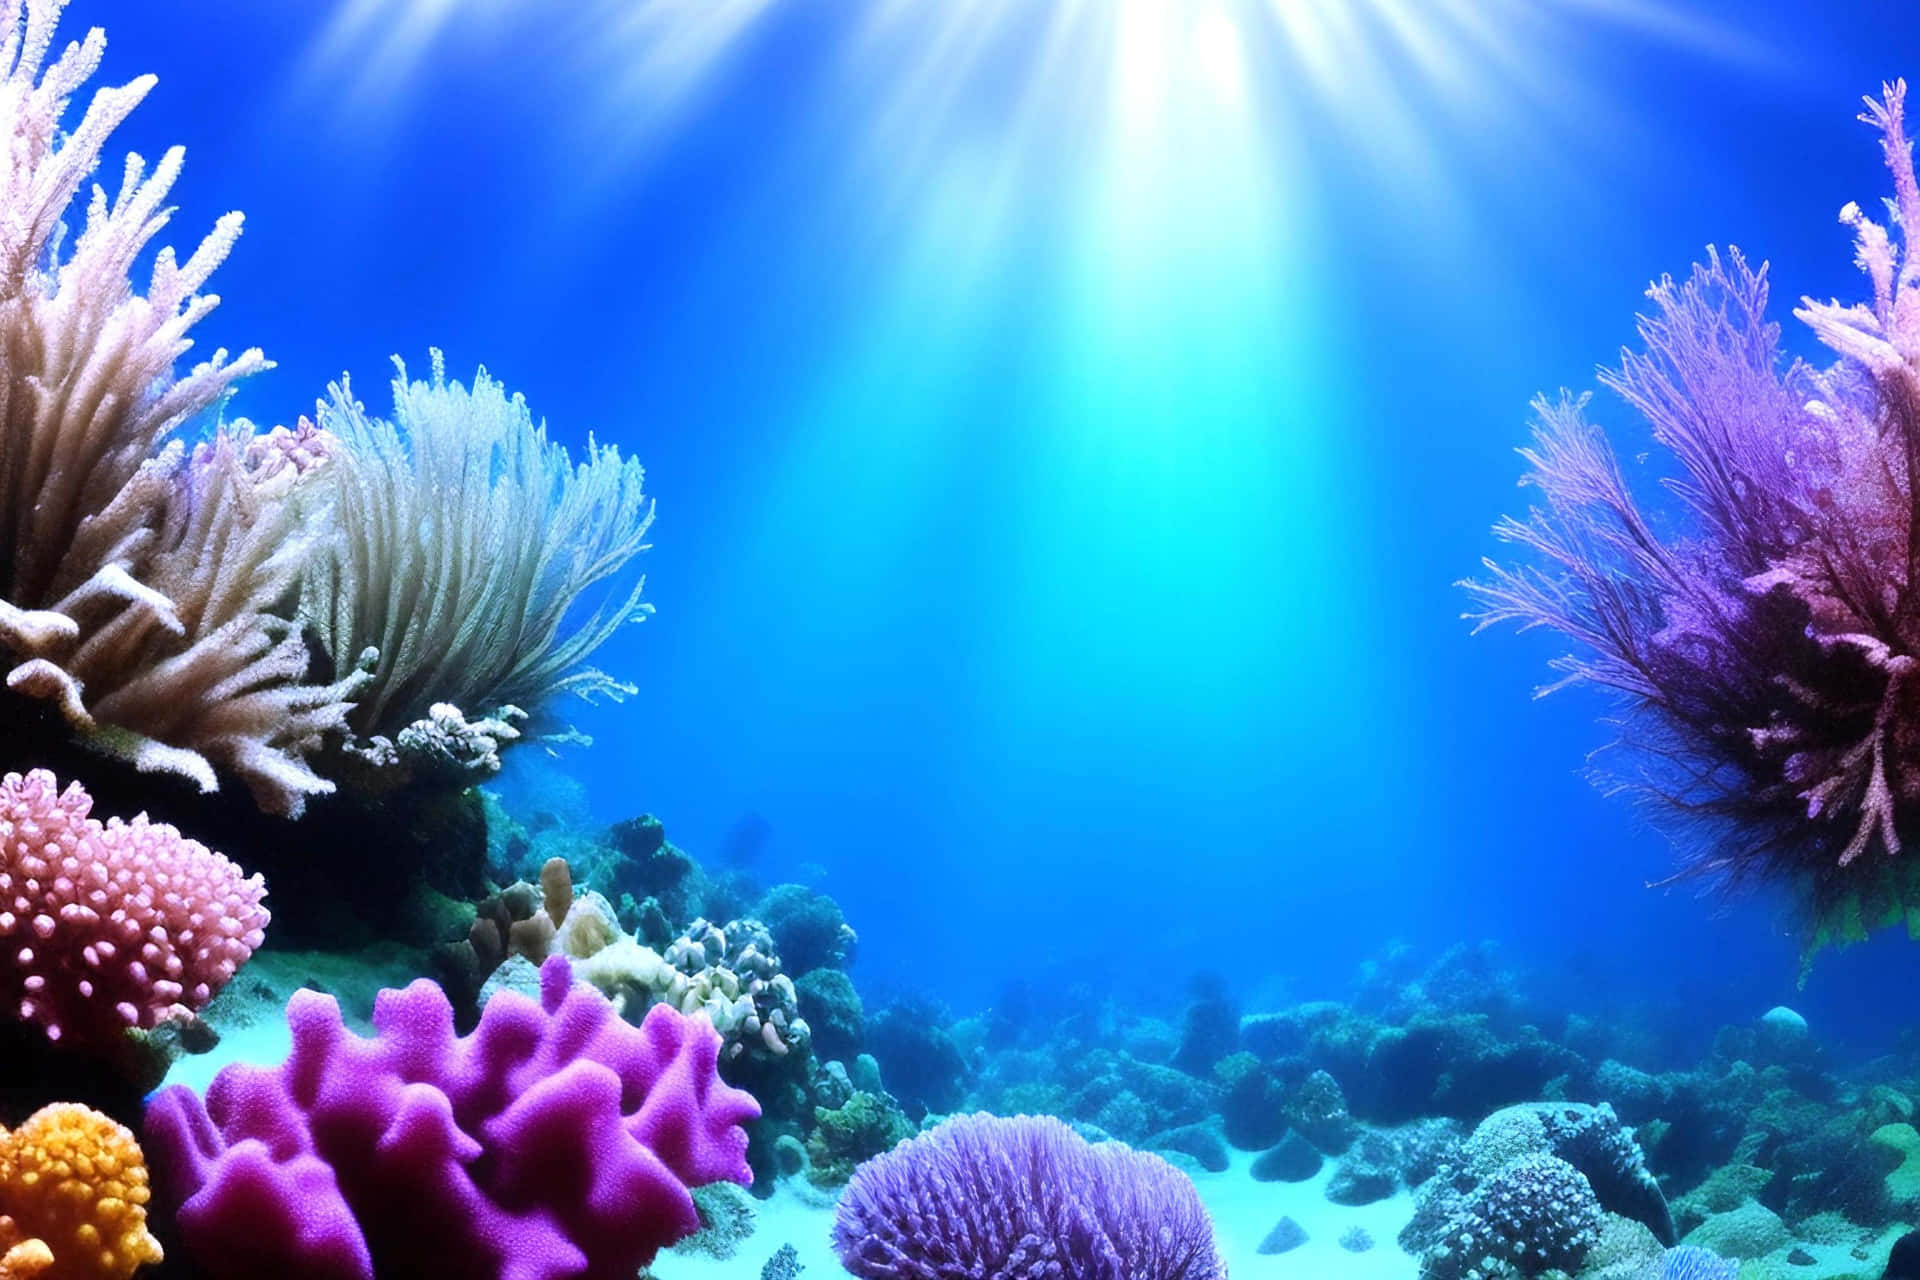 Explore the world of Underwater Wonders